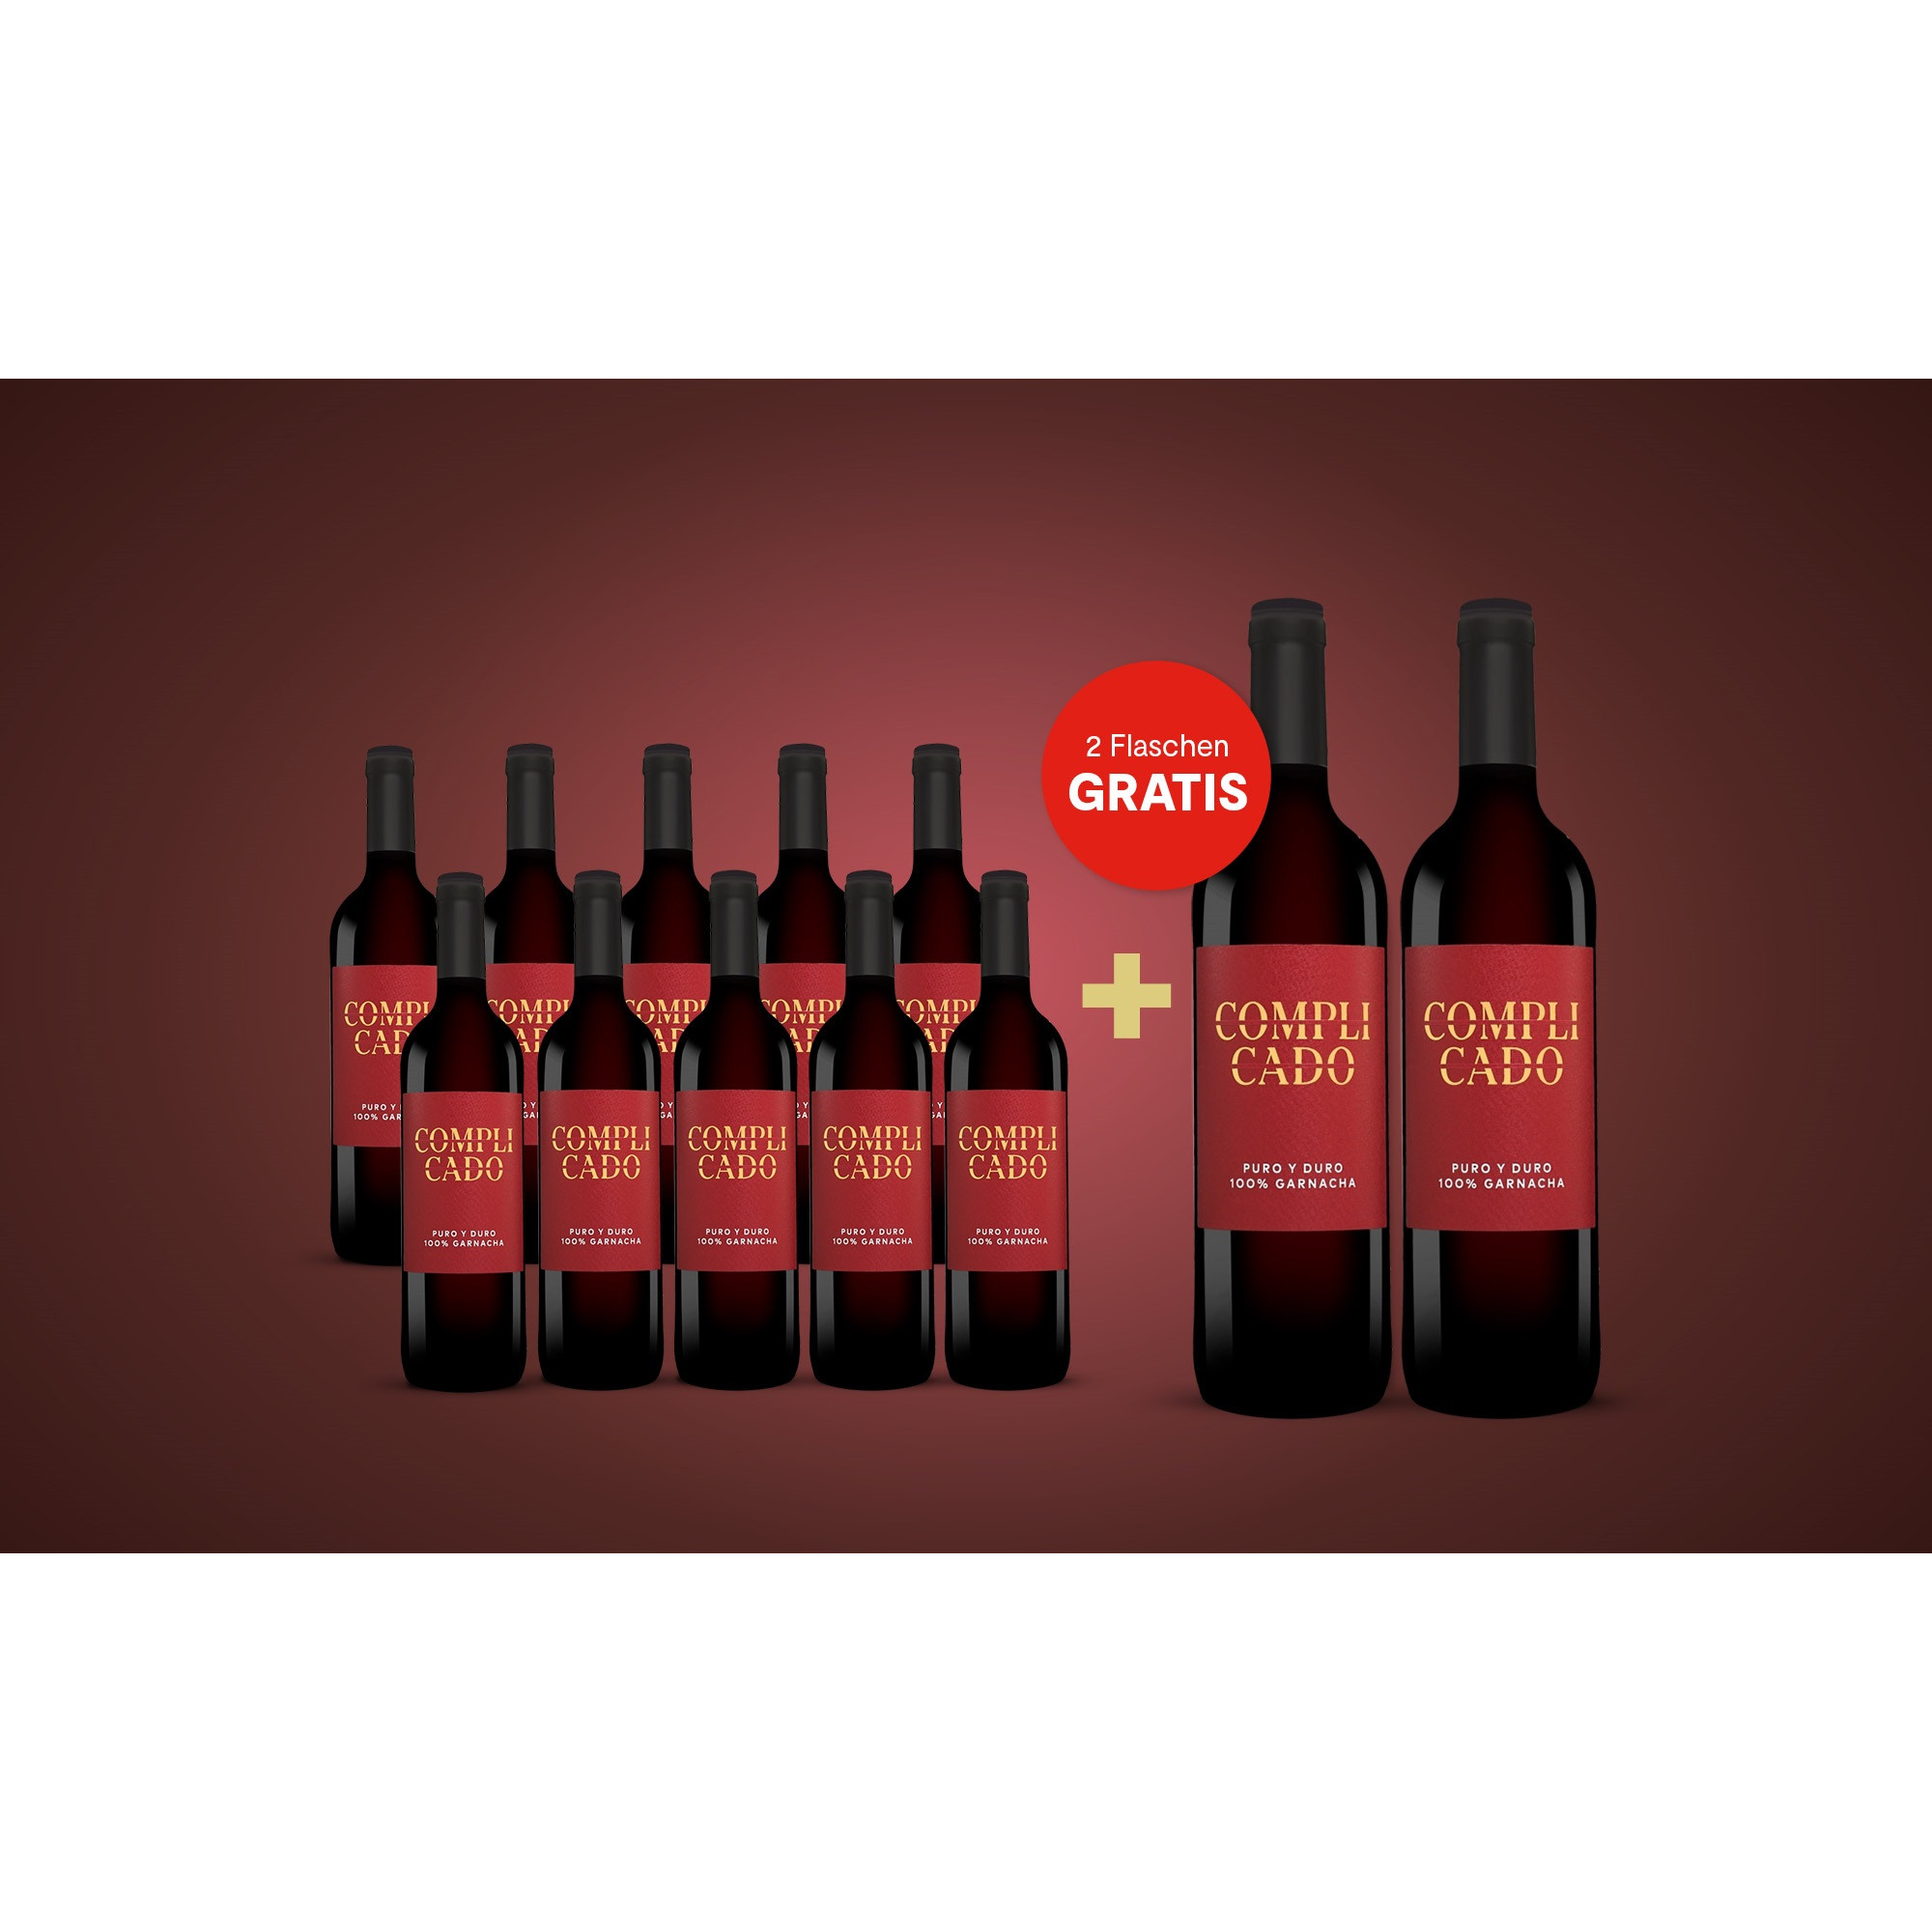 Complicado Garnacha 2018 + 2 Flaschen GRATIS  9L Trocken Weinpaket aus Spanien 34250 vinos DE